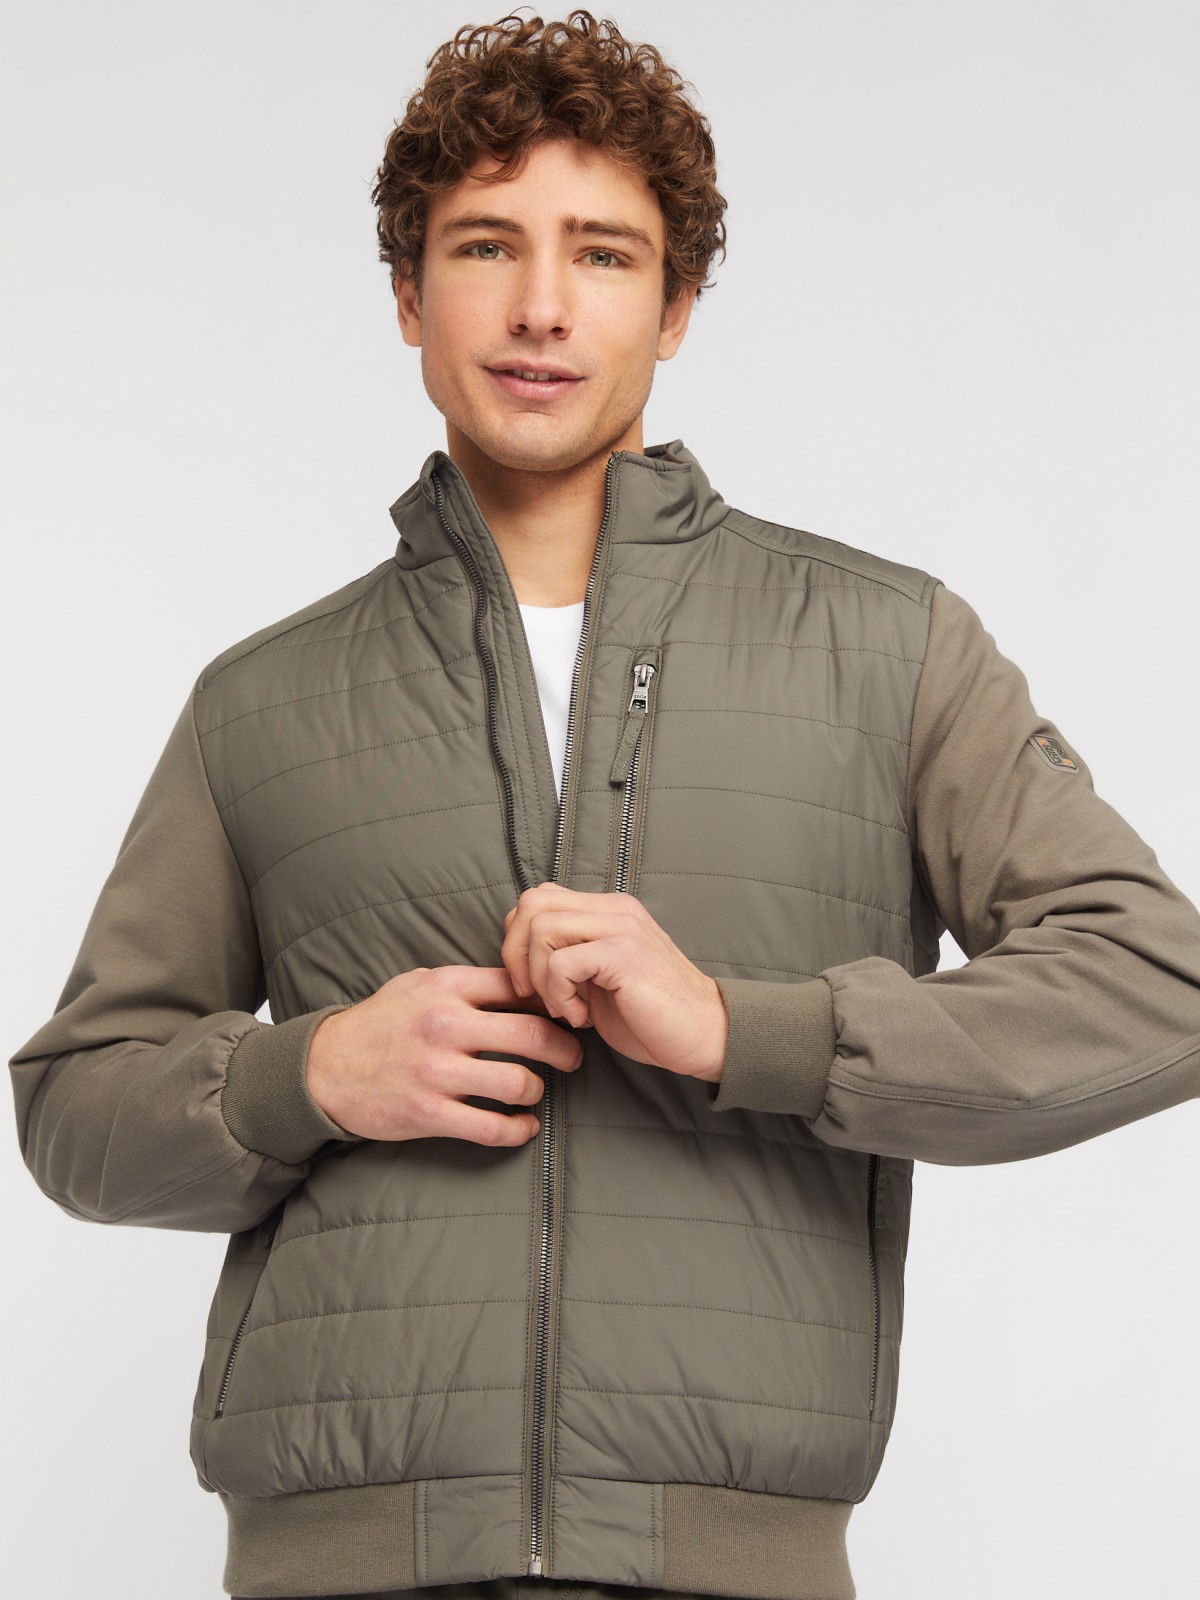 Утеплённая куртка-толстовка с воротником-стойкой zolla 014135102074, цвет хаки, размер S